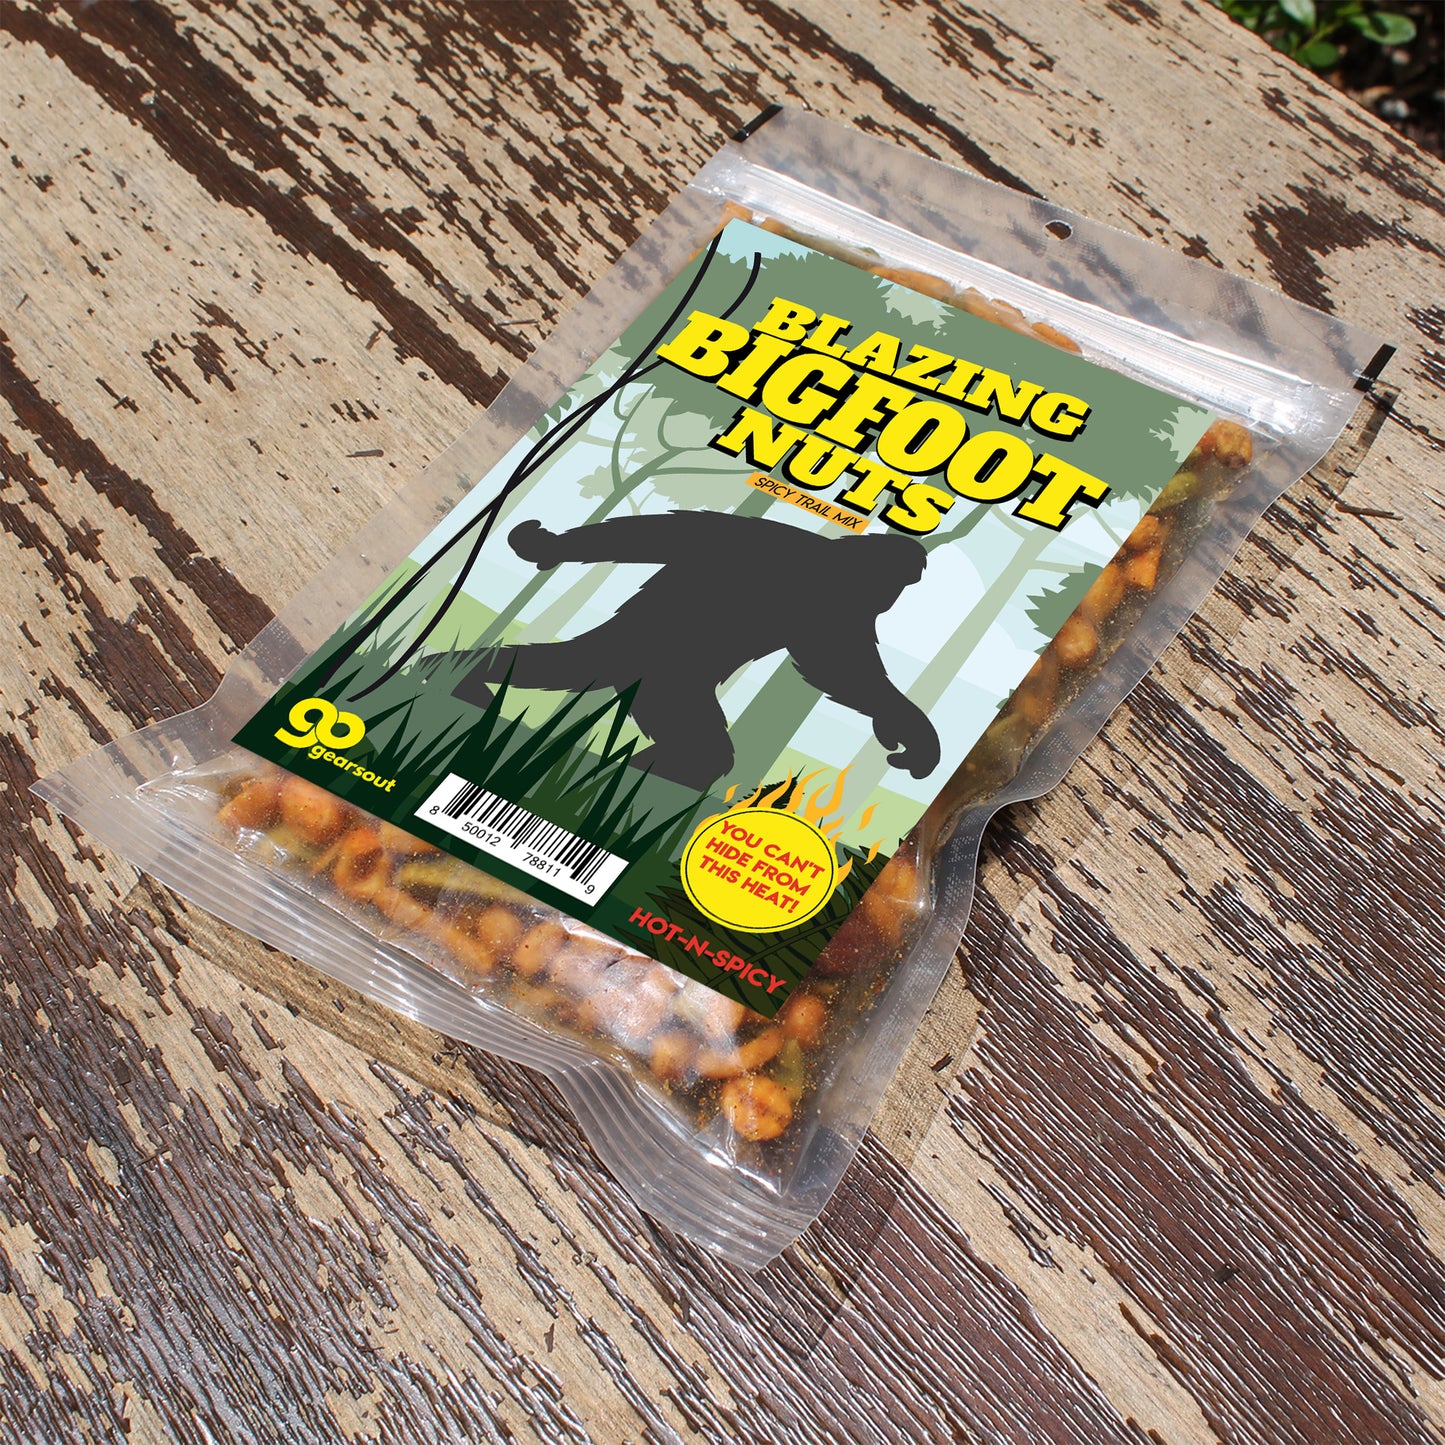 Blazing Bigfoot Nuts Spicy Trail Mix